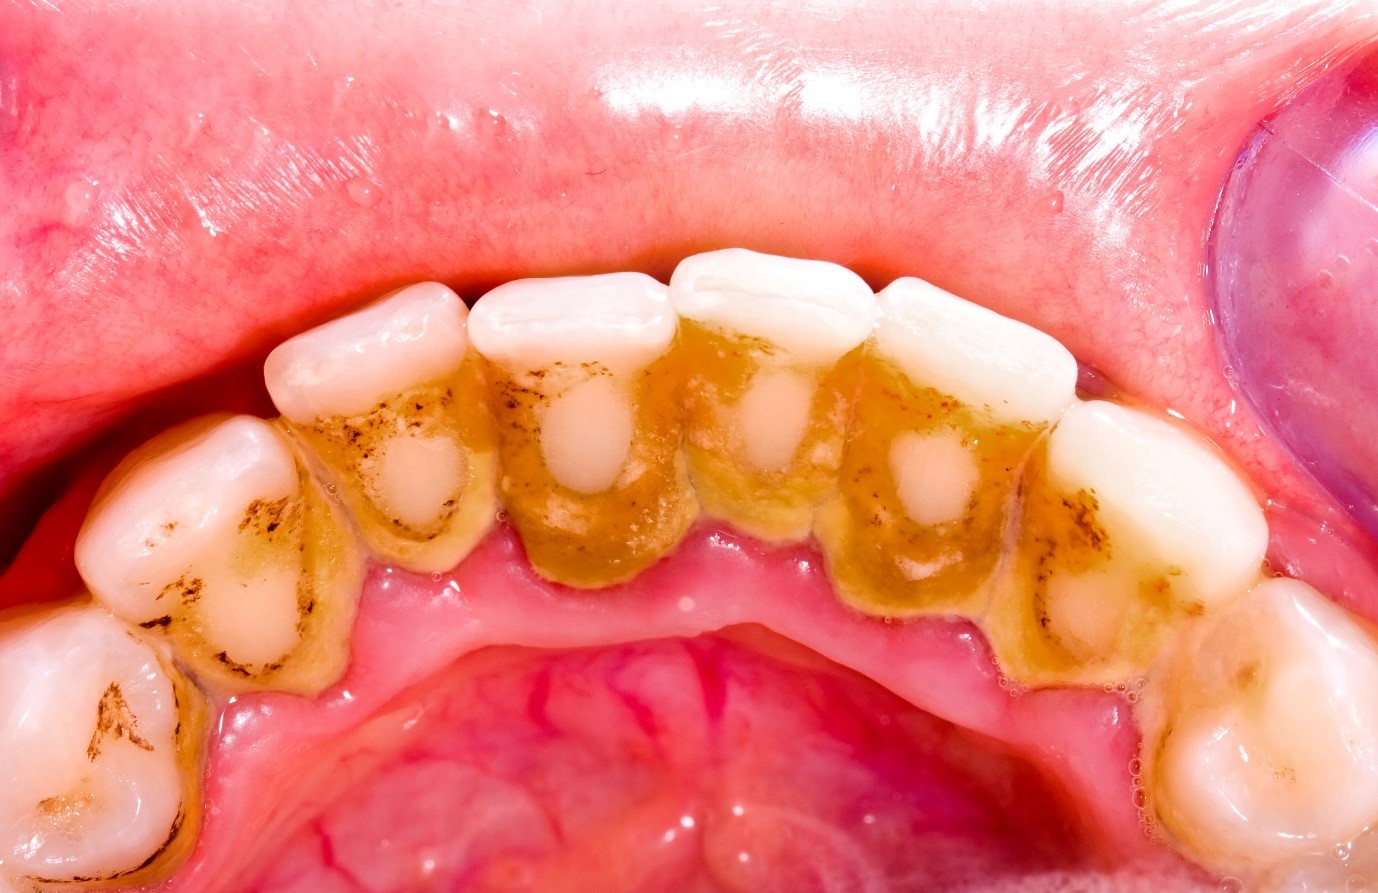  Mảng bám tích tụ lâu ngày trong cao răng là nơi trú ngụ của vi khuẩn -- Những kinh nghiệm trước khi đi lấy cao răng mà bạn nên biết --